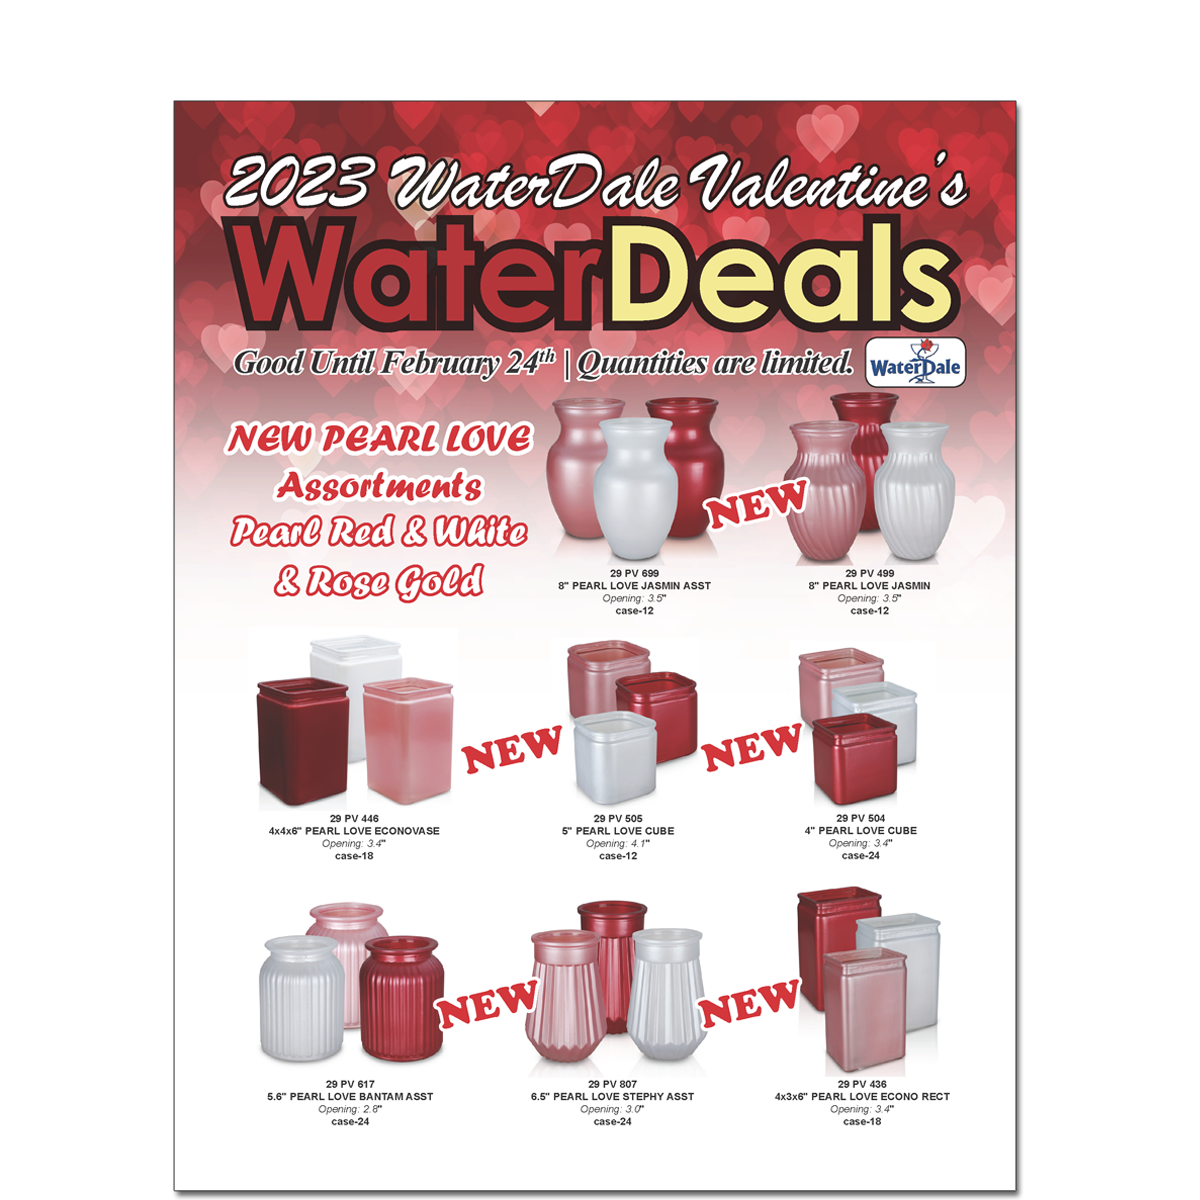 Valentine's Water Deals 2023